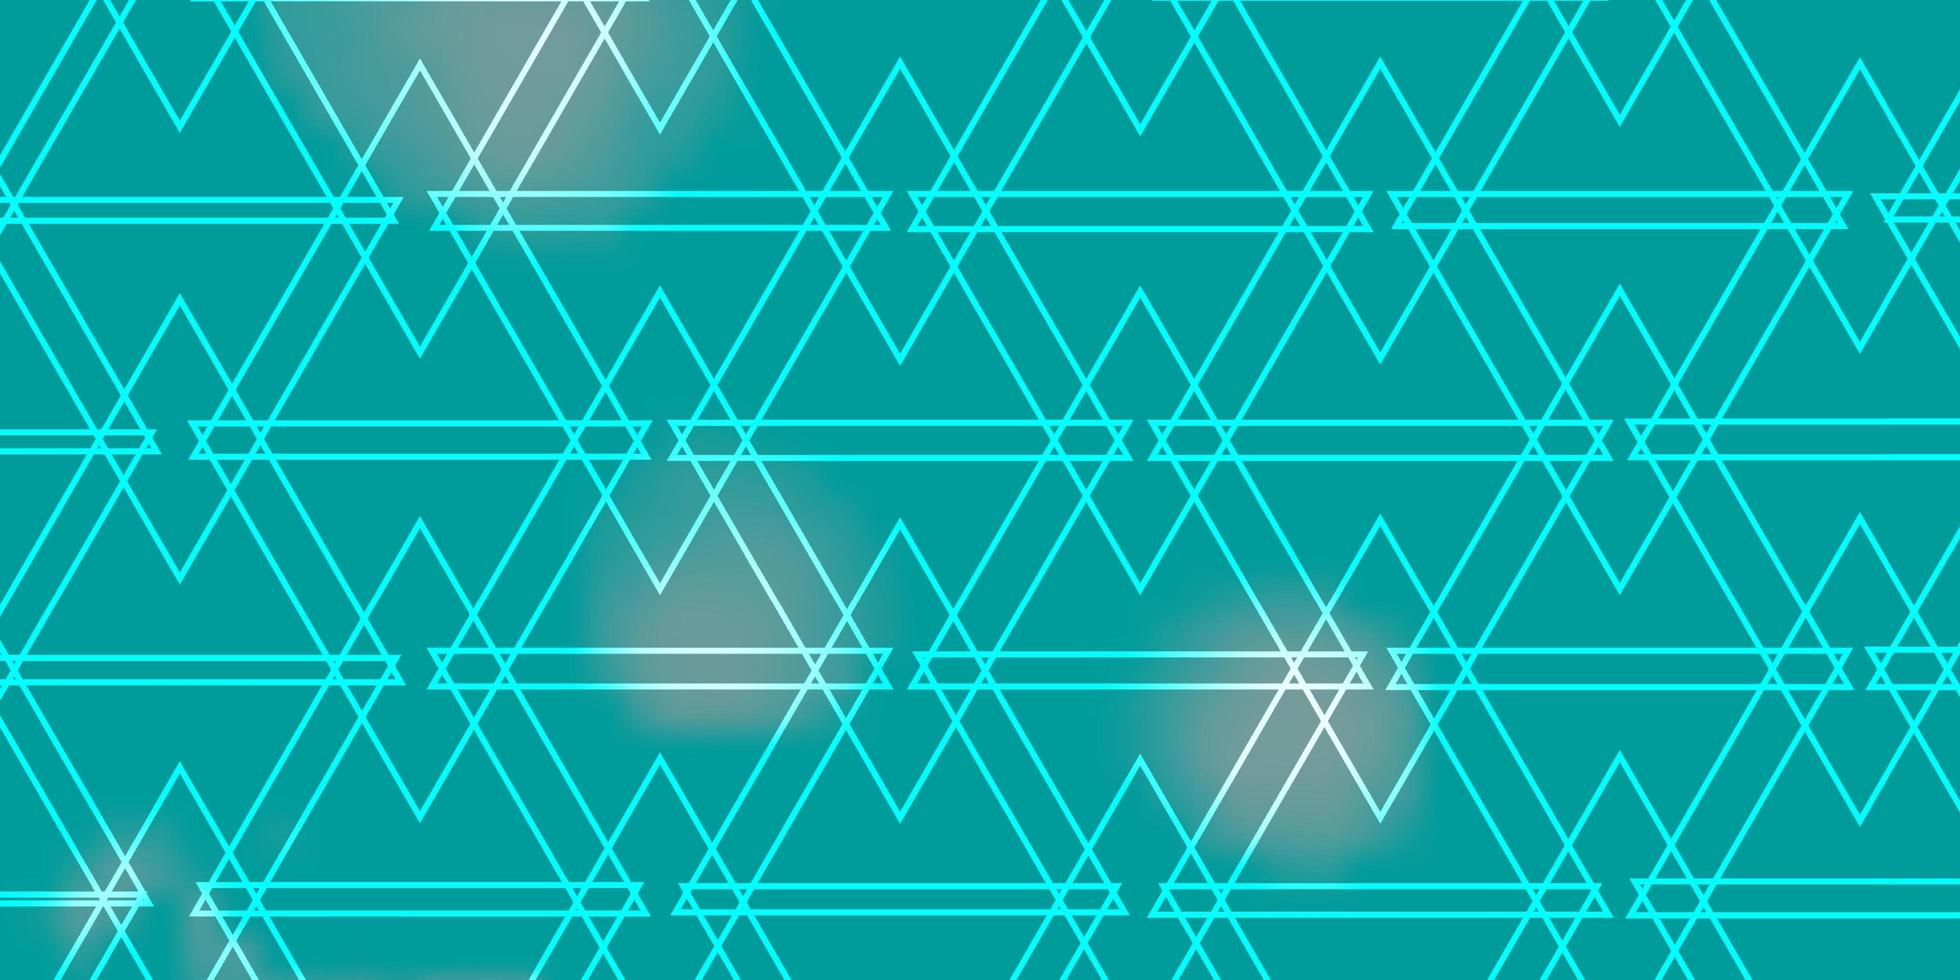 Fondo de vector verde azul claro con líneas triángulos Ilustración de degradado moderno con plantilla de triángulos de colores para páginas de destino